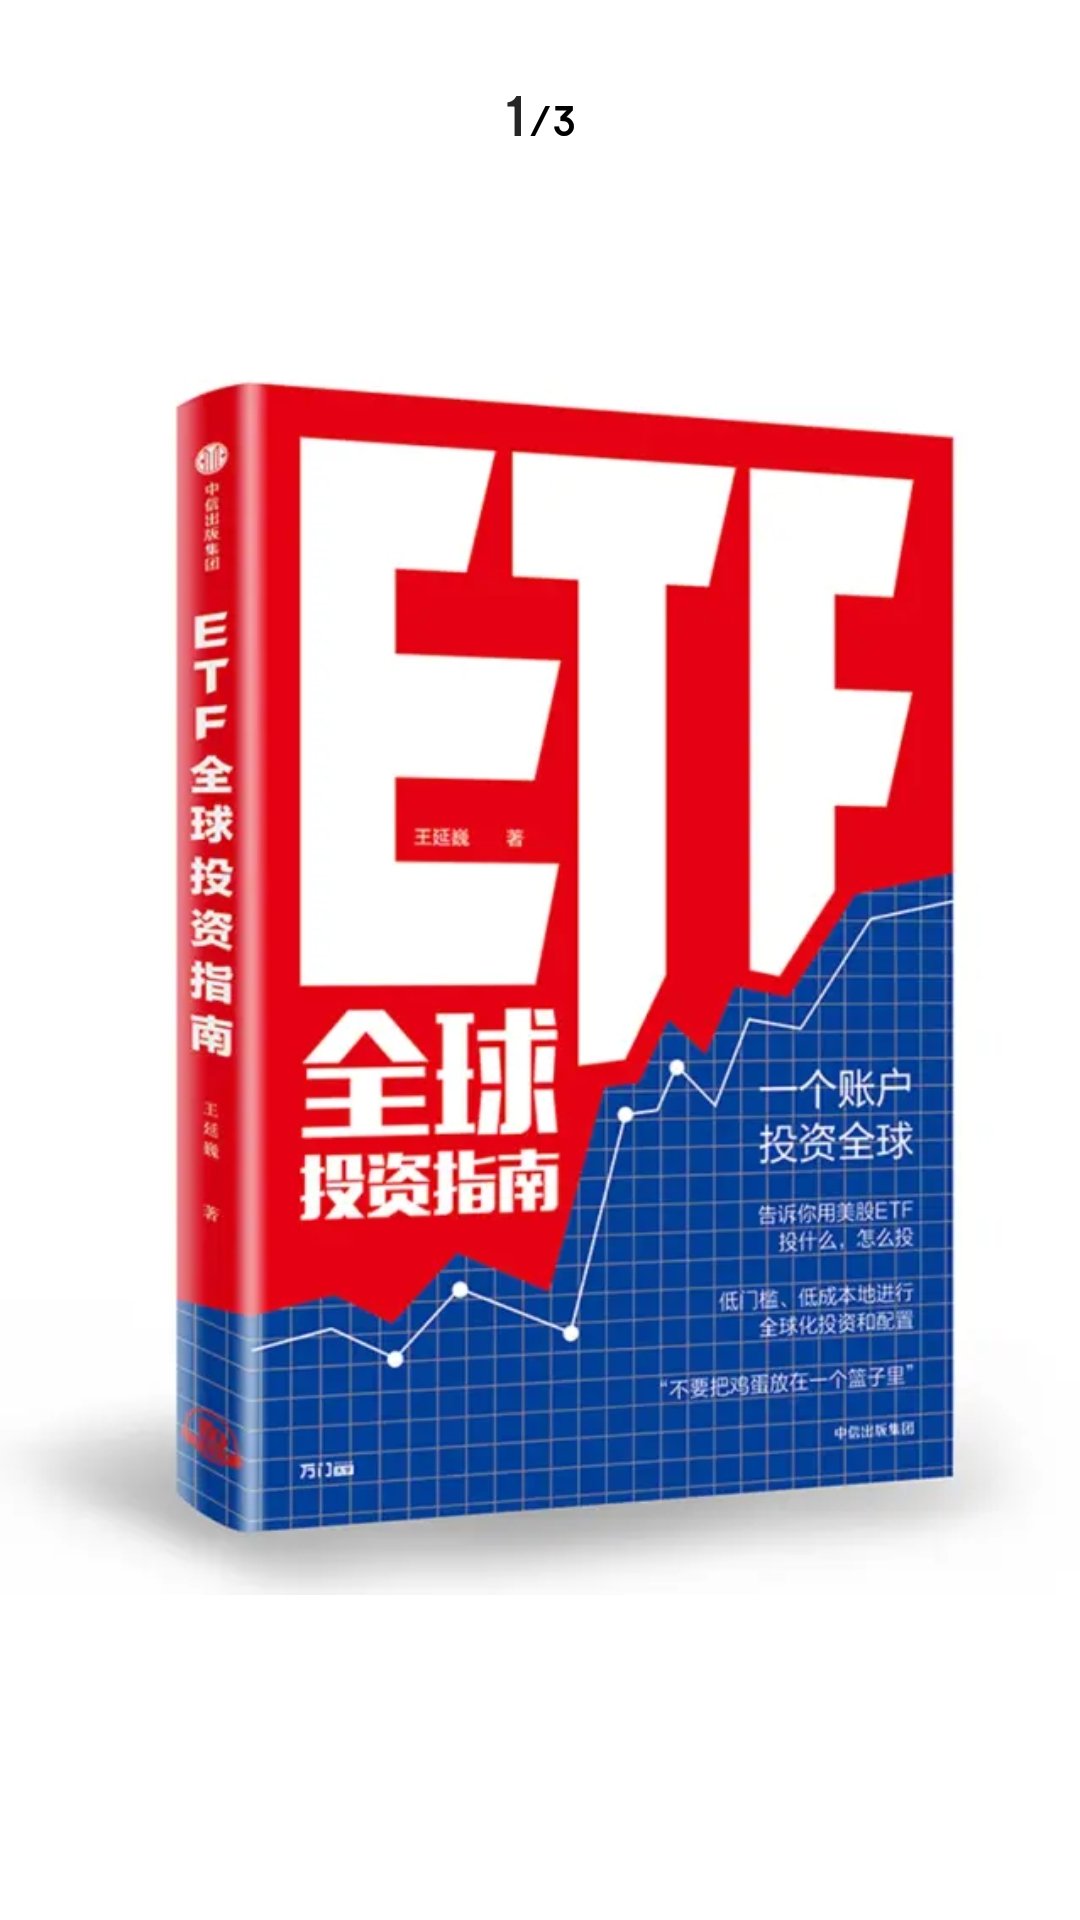 投资ETF确实是个好办法，最近已经完全放弃主动选股的想法了。。